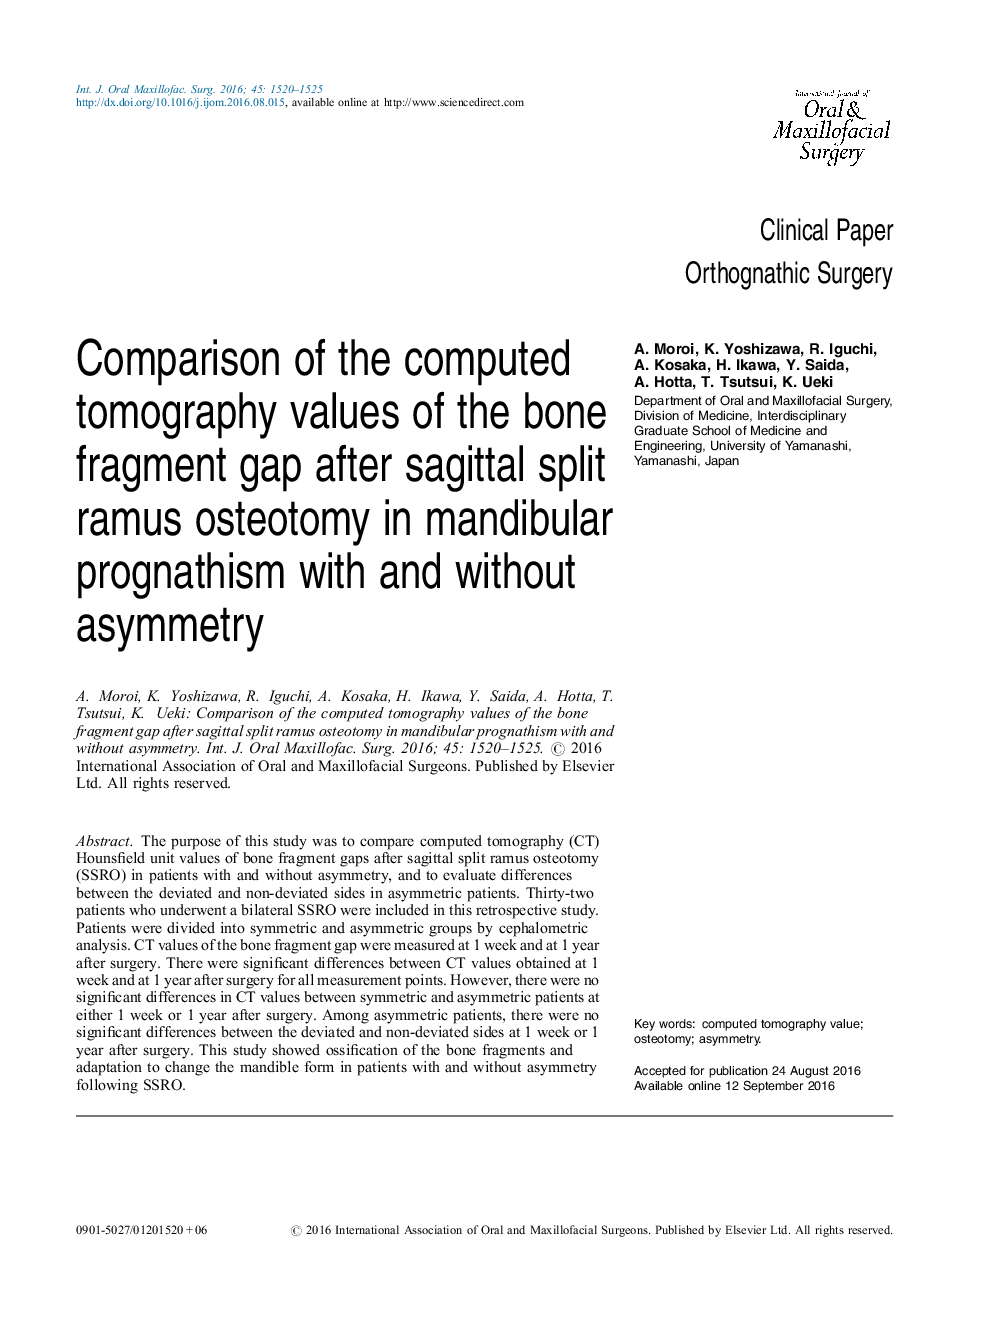 مقایسه مقادیر توموگرافی کامپیوتری شکاف استخوانی بعد از استئوتومی شکمبه پارگی رضایت در پیشآمدهای مندیبل با و بدون نامتقارن 